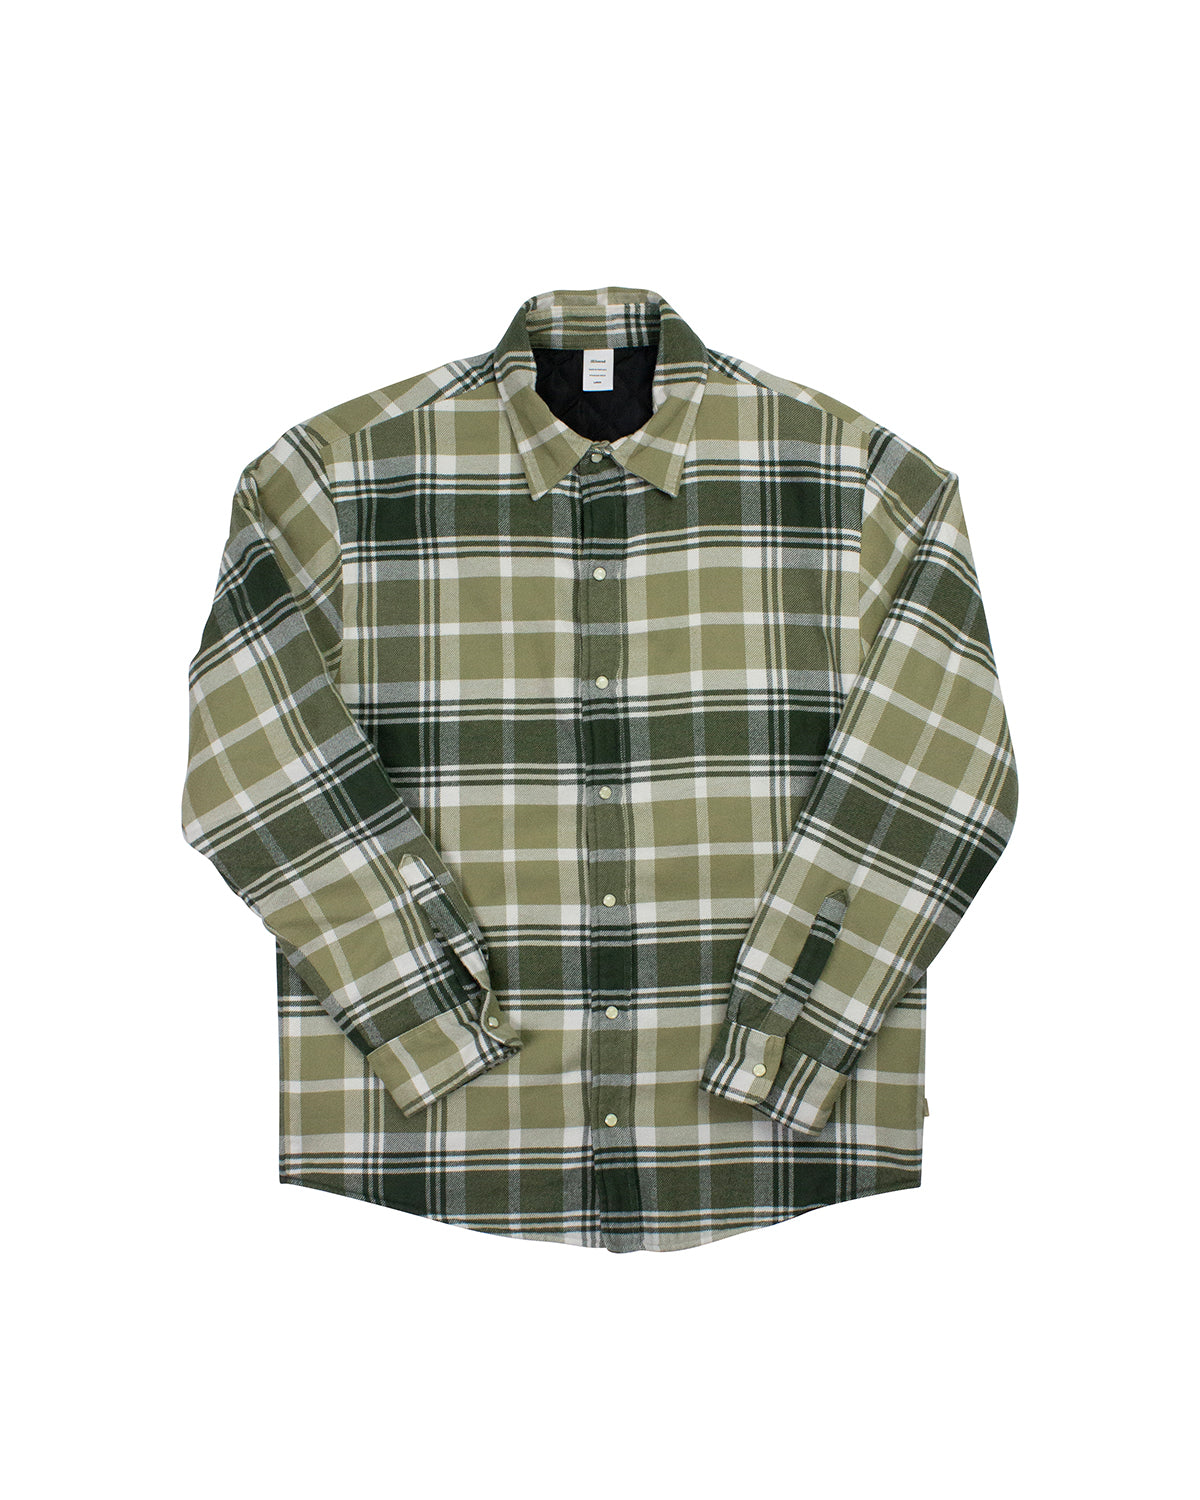 jjjjound Thermal Shirt - Olive size:XL-